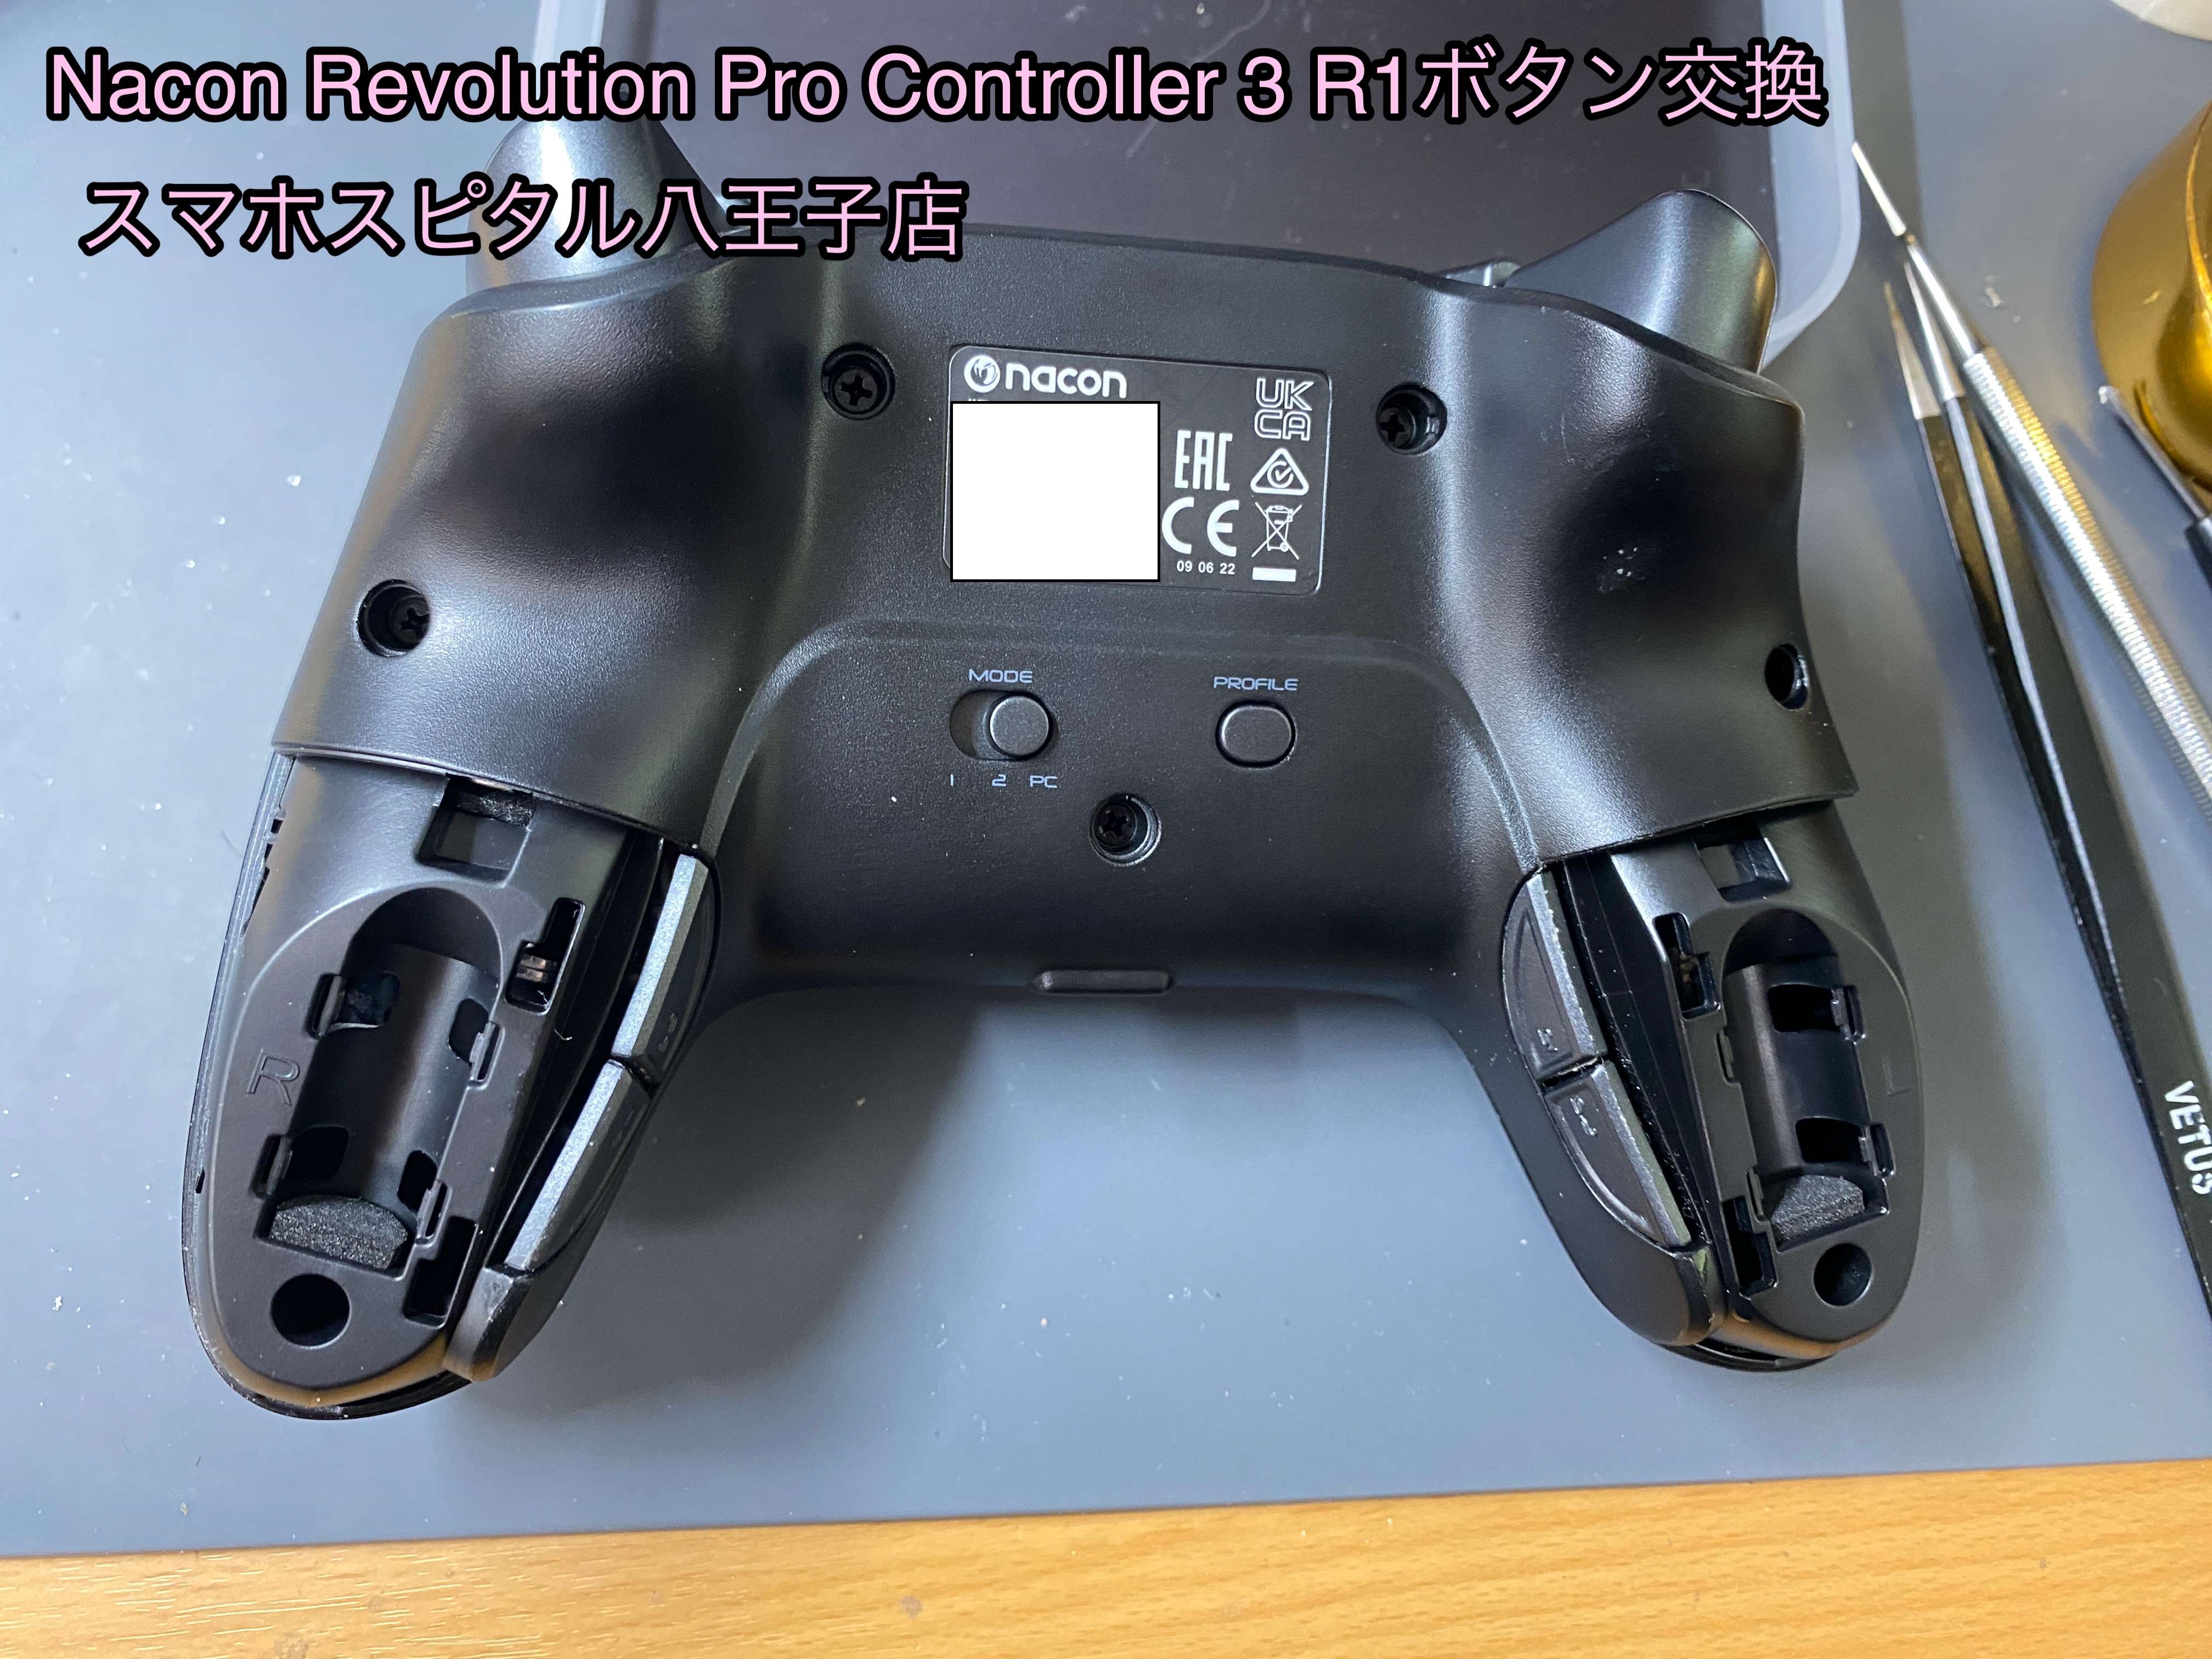 PS4対応コントローラー Nacon Revolution Pro Controller3のR1ボタンが 